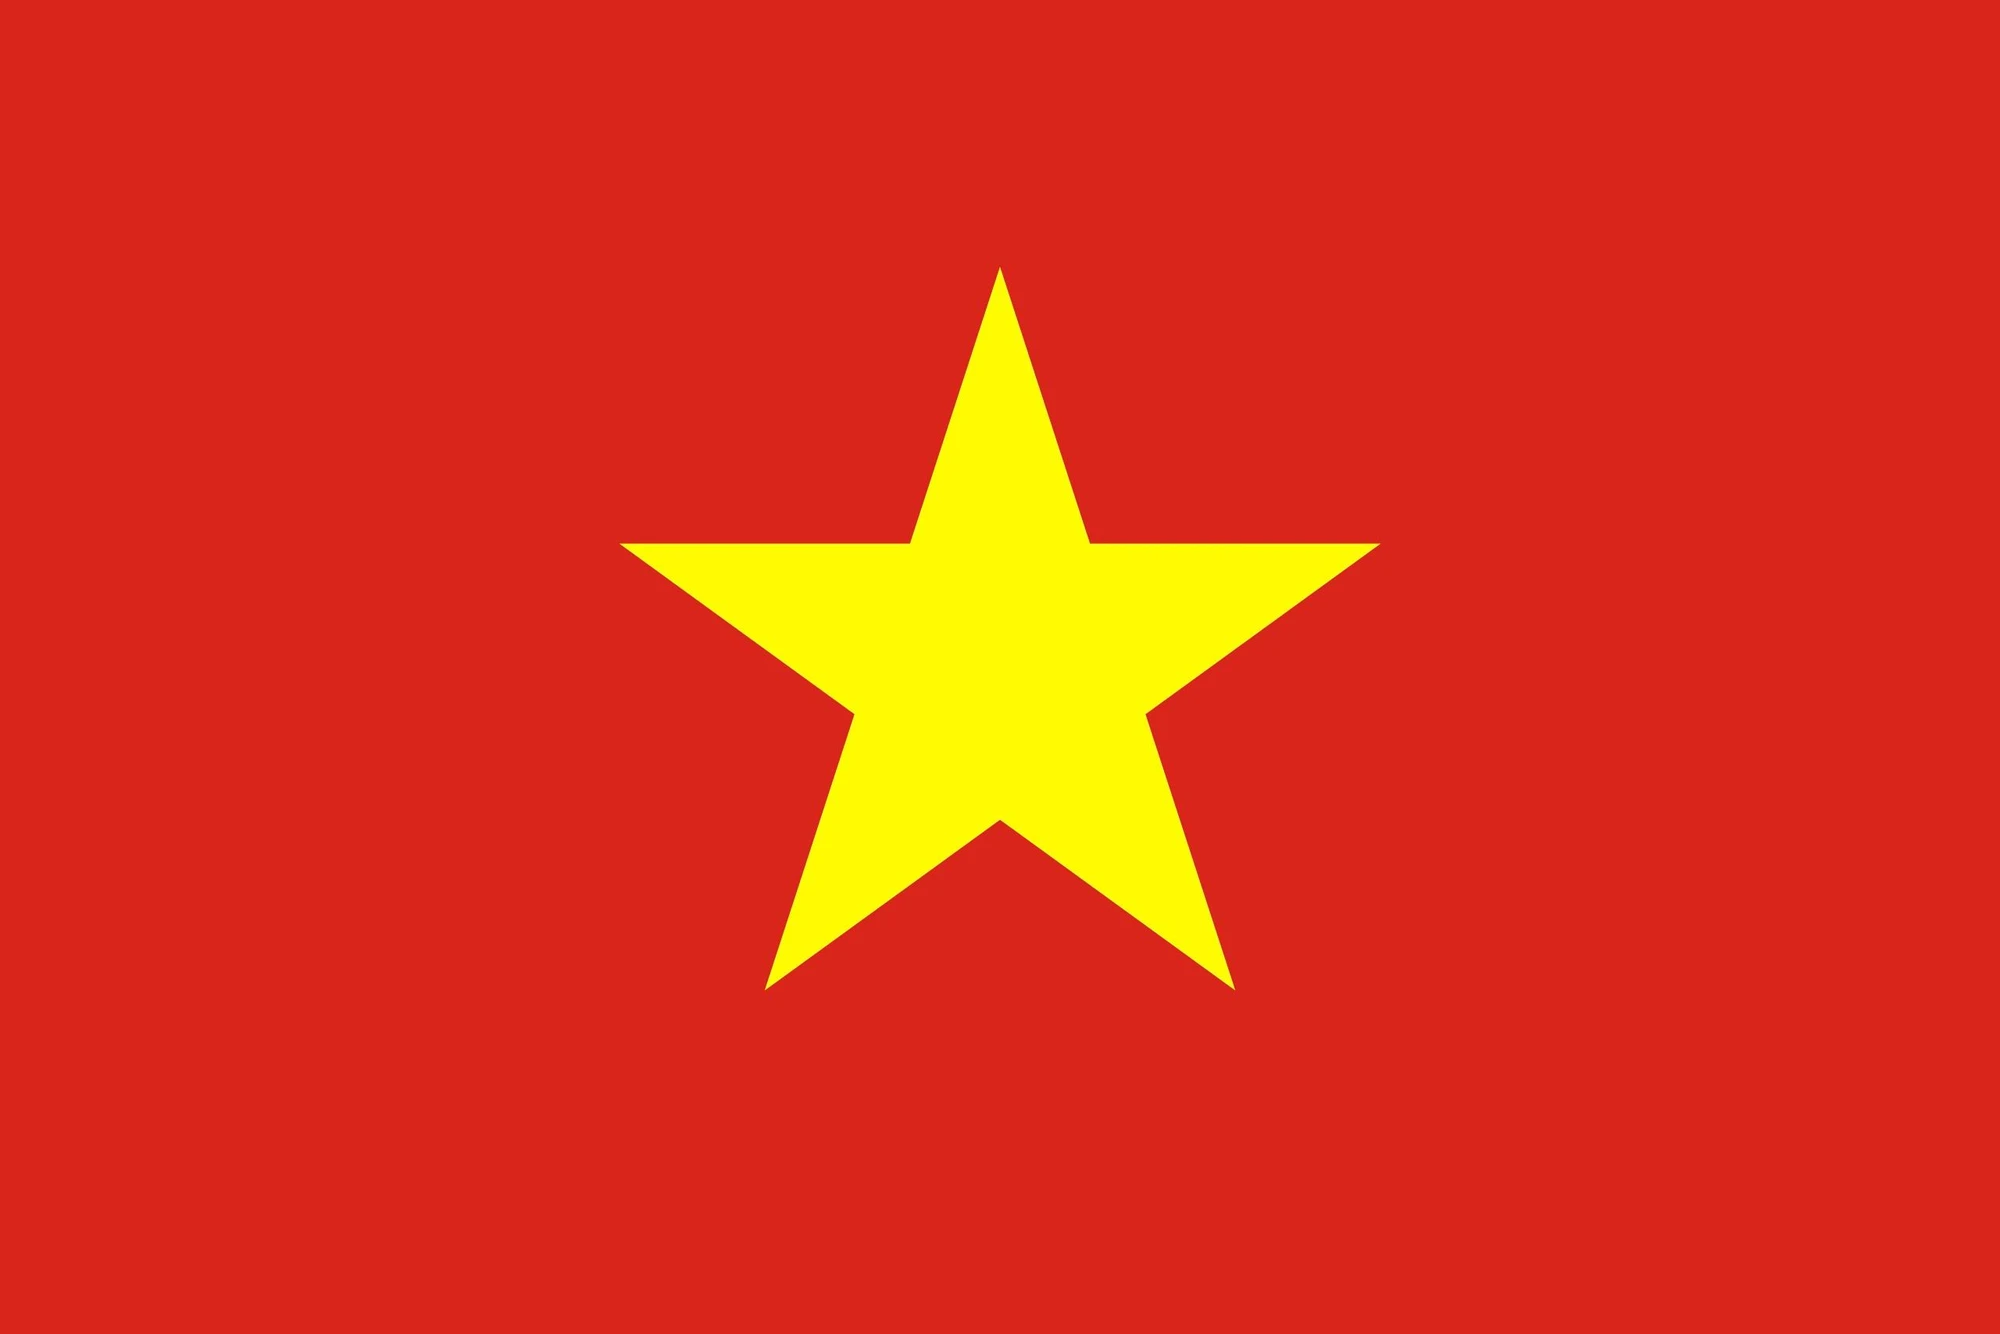 Cờ đỏ rực sao vàng – hình tượng linh nghiệm quan trọng của dân tộc bản địa nước Việt Nam hình ảnh 1